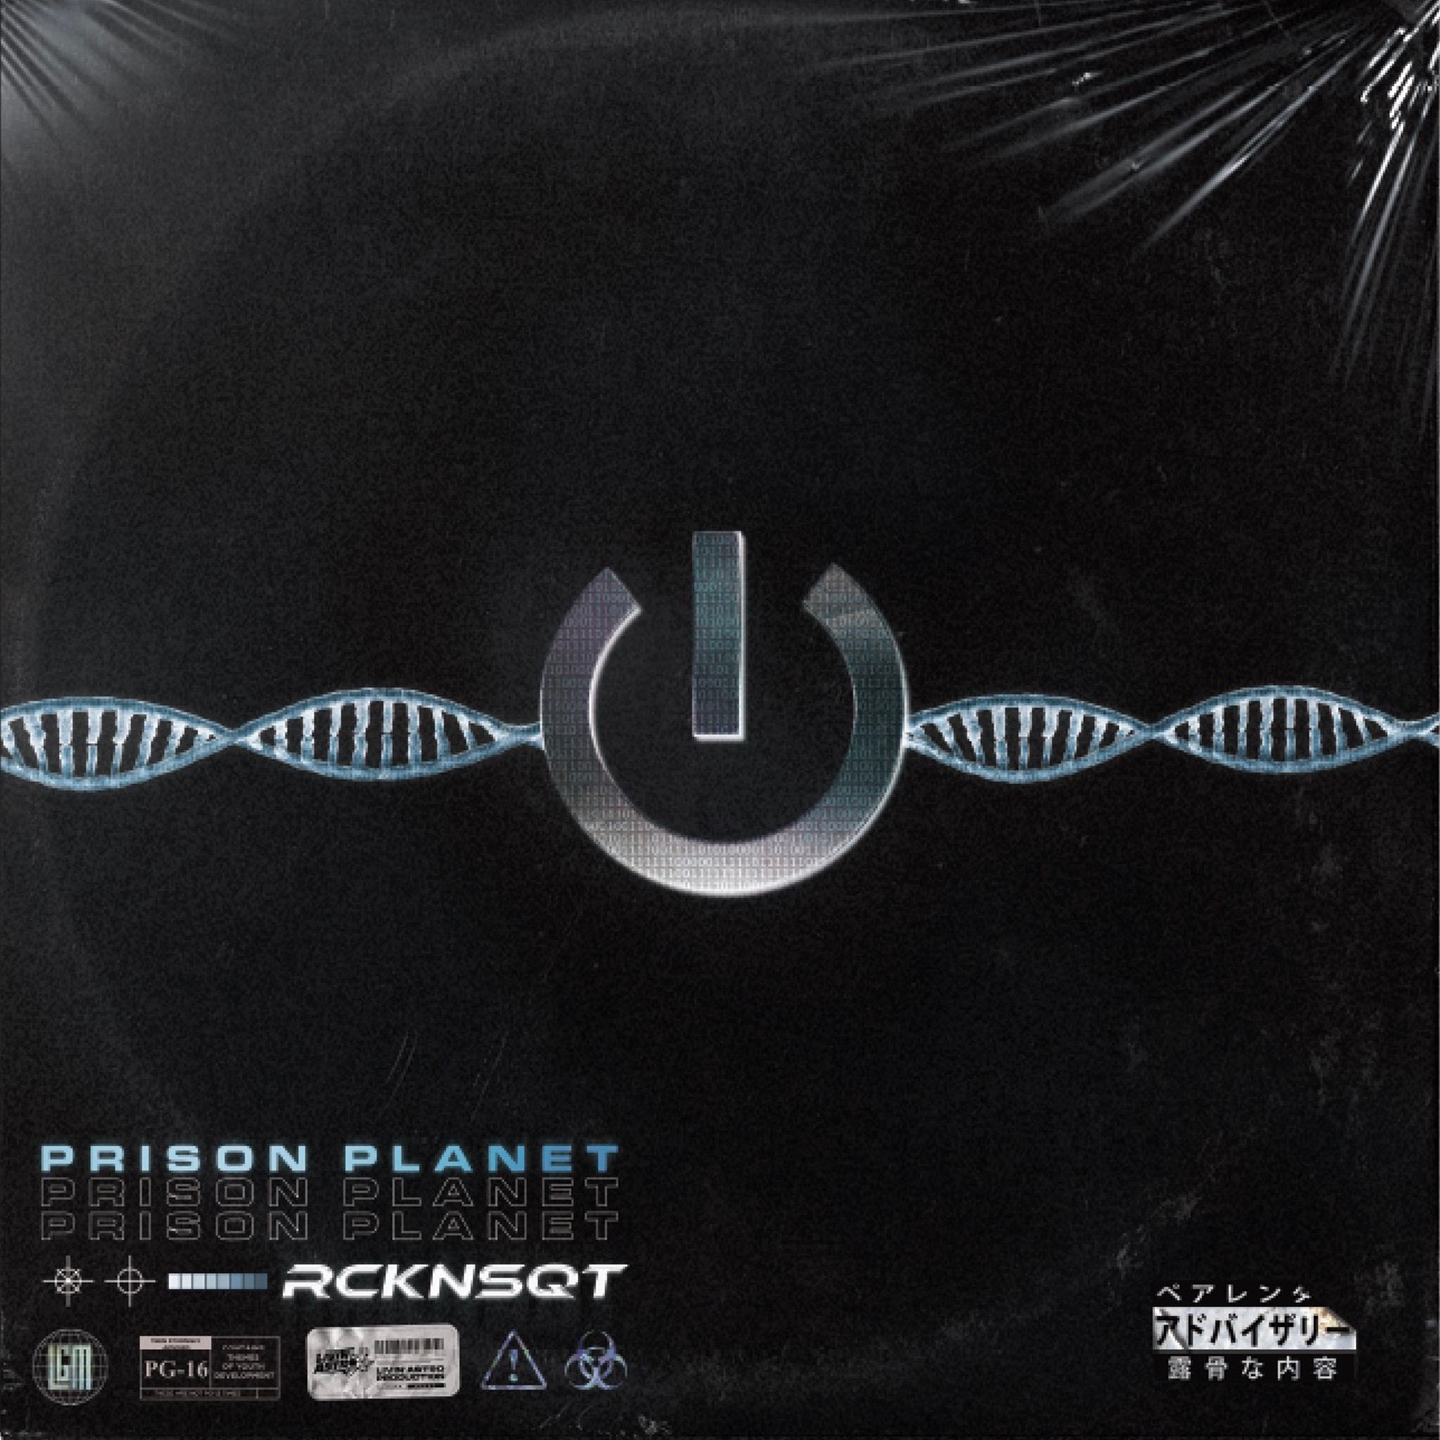 Album vinyle " RCKNSQT - Prison Planet " de  sur Scredboutique.com